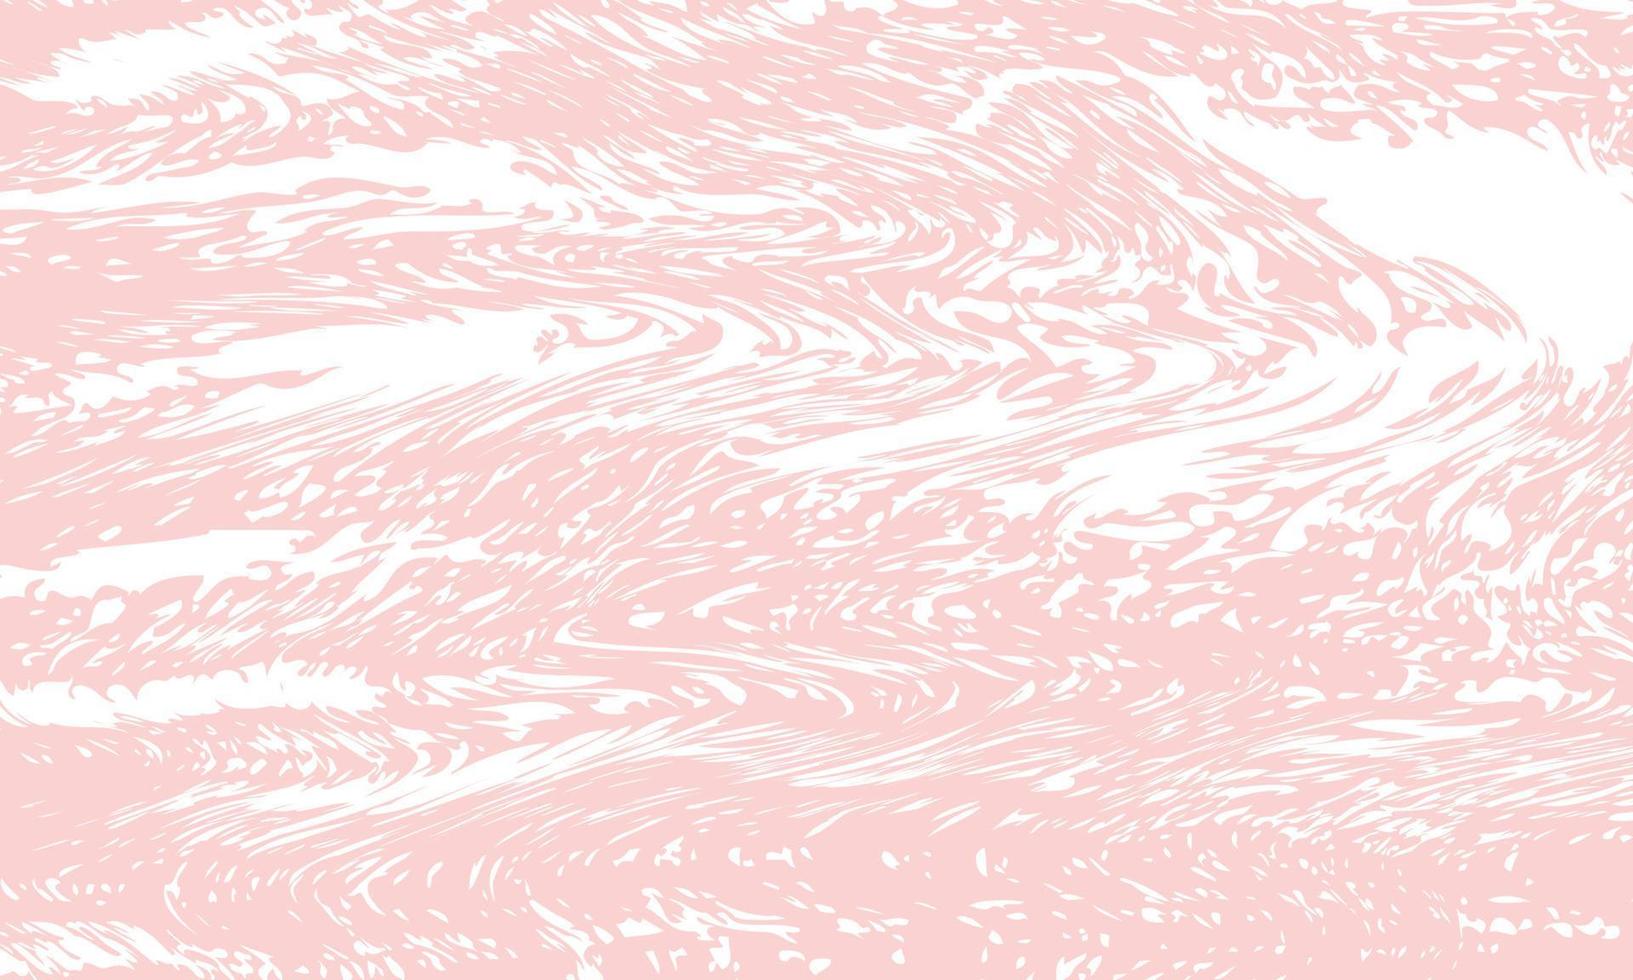 textura grunge branca abstrata sobre fundo rosa claro. vetor